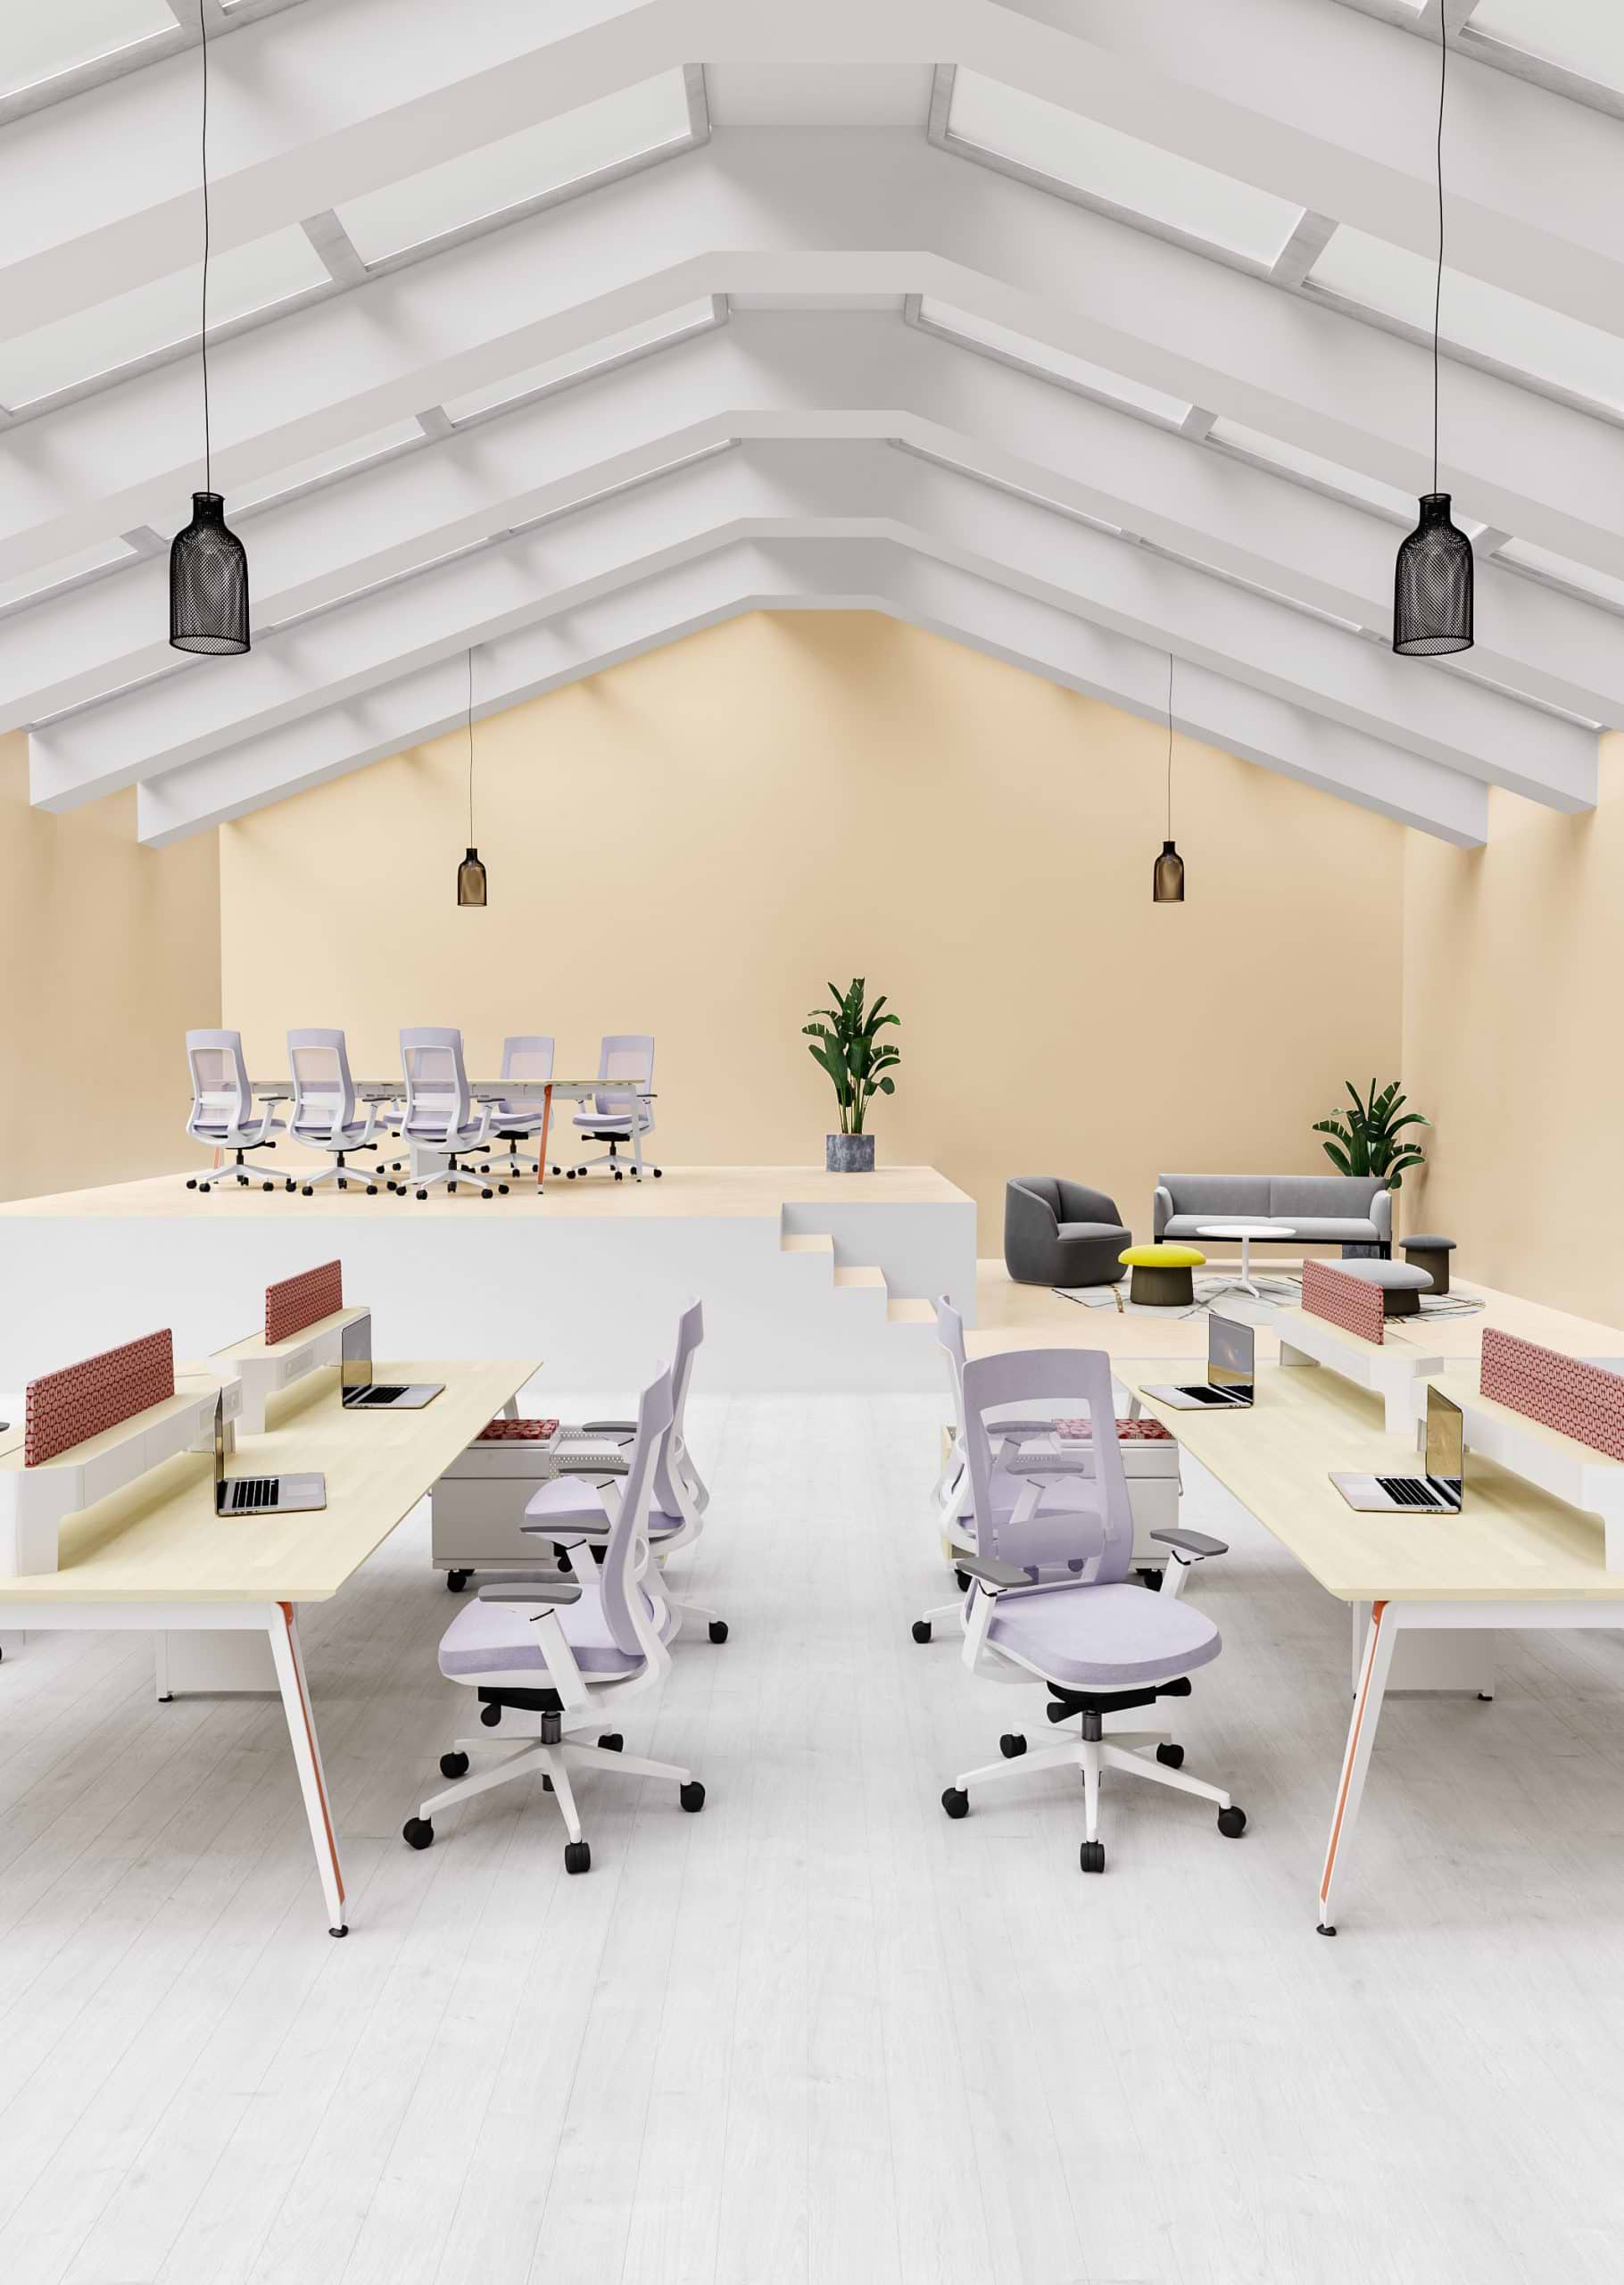 כיסא ארגונומי רב תכליתי לישיבה ממושכת דגם אלביט צבע לבן SitPlus